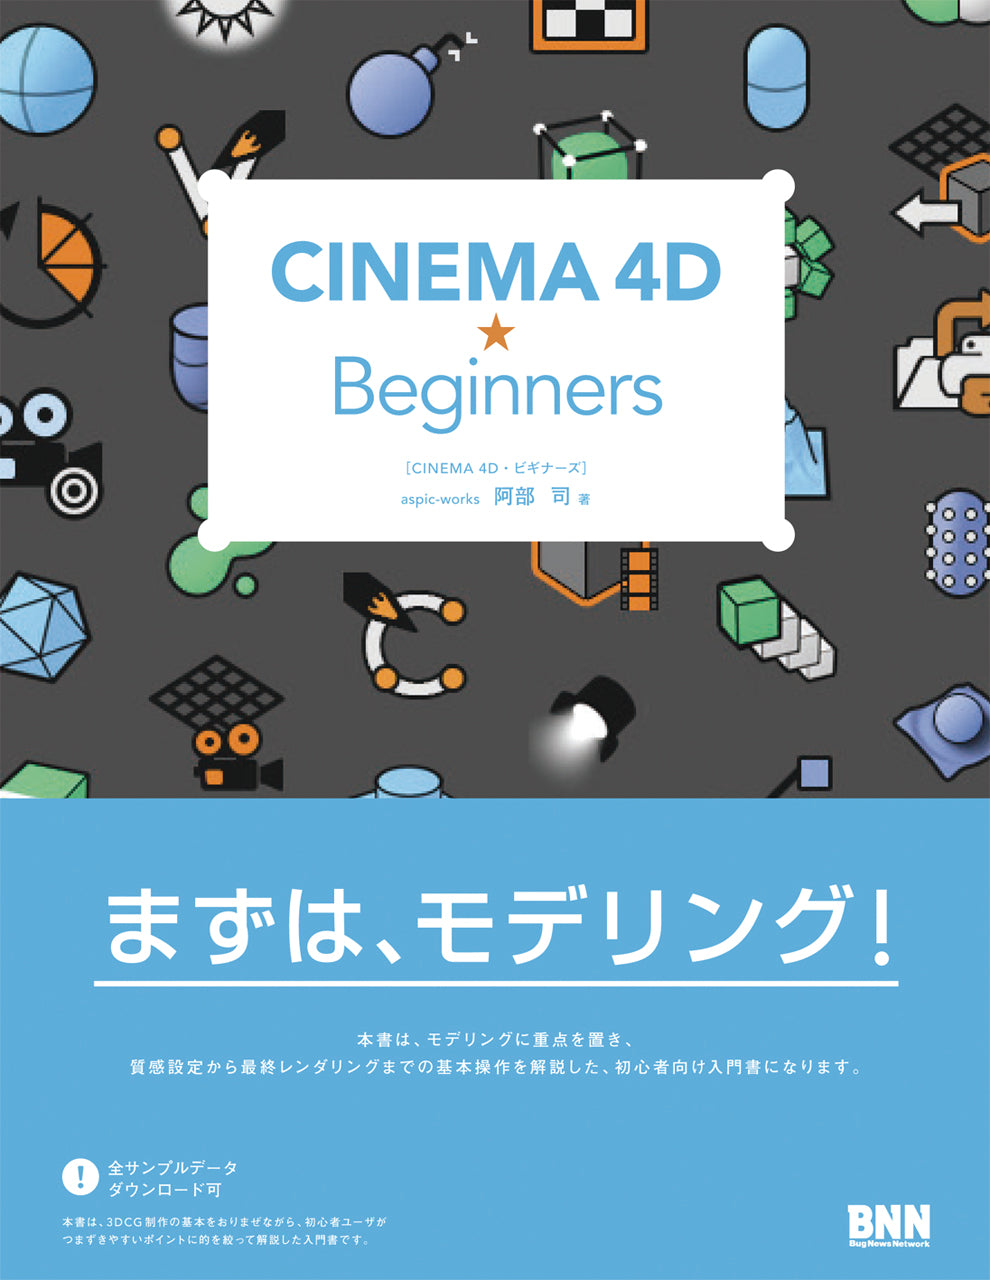 CINEMA 4D 目的別ガイドブック PART1 作業環境・モデリング